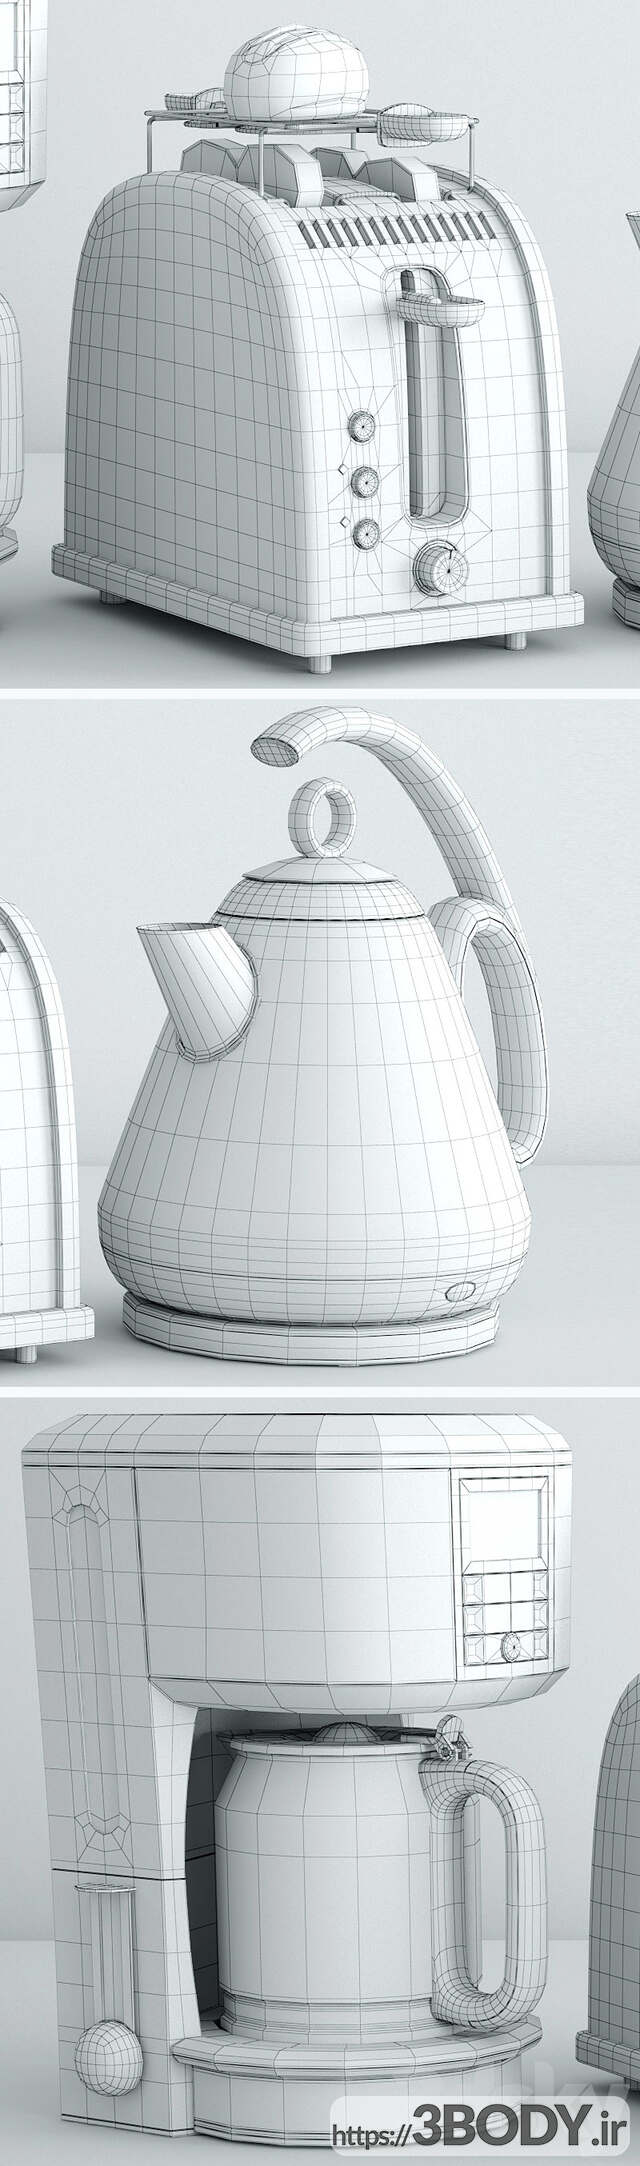 مدل سه بعدی ست آشپزخانه راسل هابز عکس 3